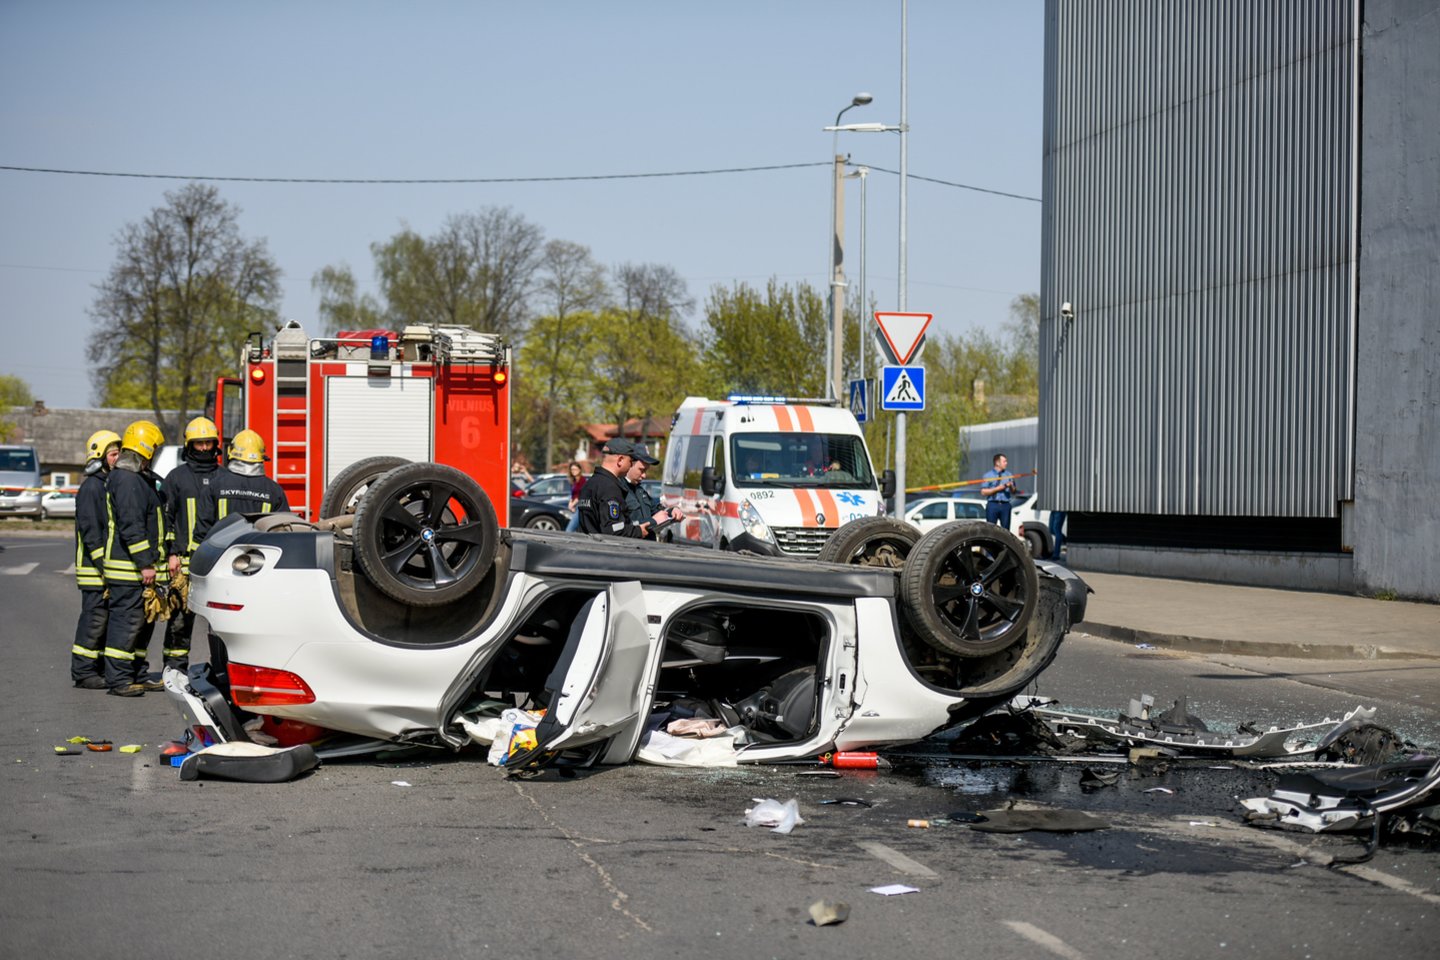 Balandį iš aikštelės 5 aukšto iškritus automobiliui, nukentėjusi vairuotoja atsidūrė reanimacijoje dėl sunkių sveikatos sužalojimų. <br>D.Umbraso nuotr.